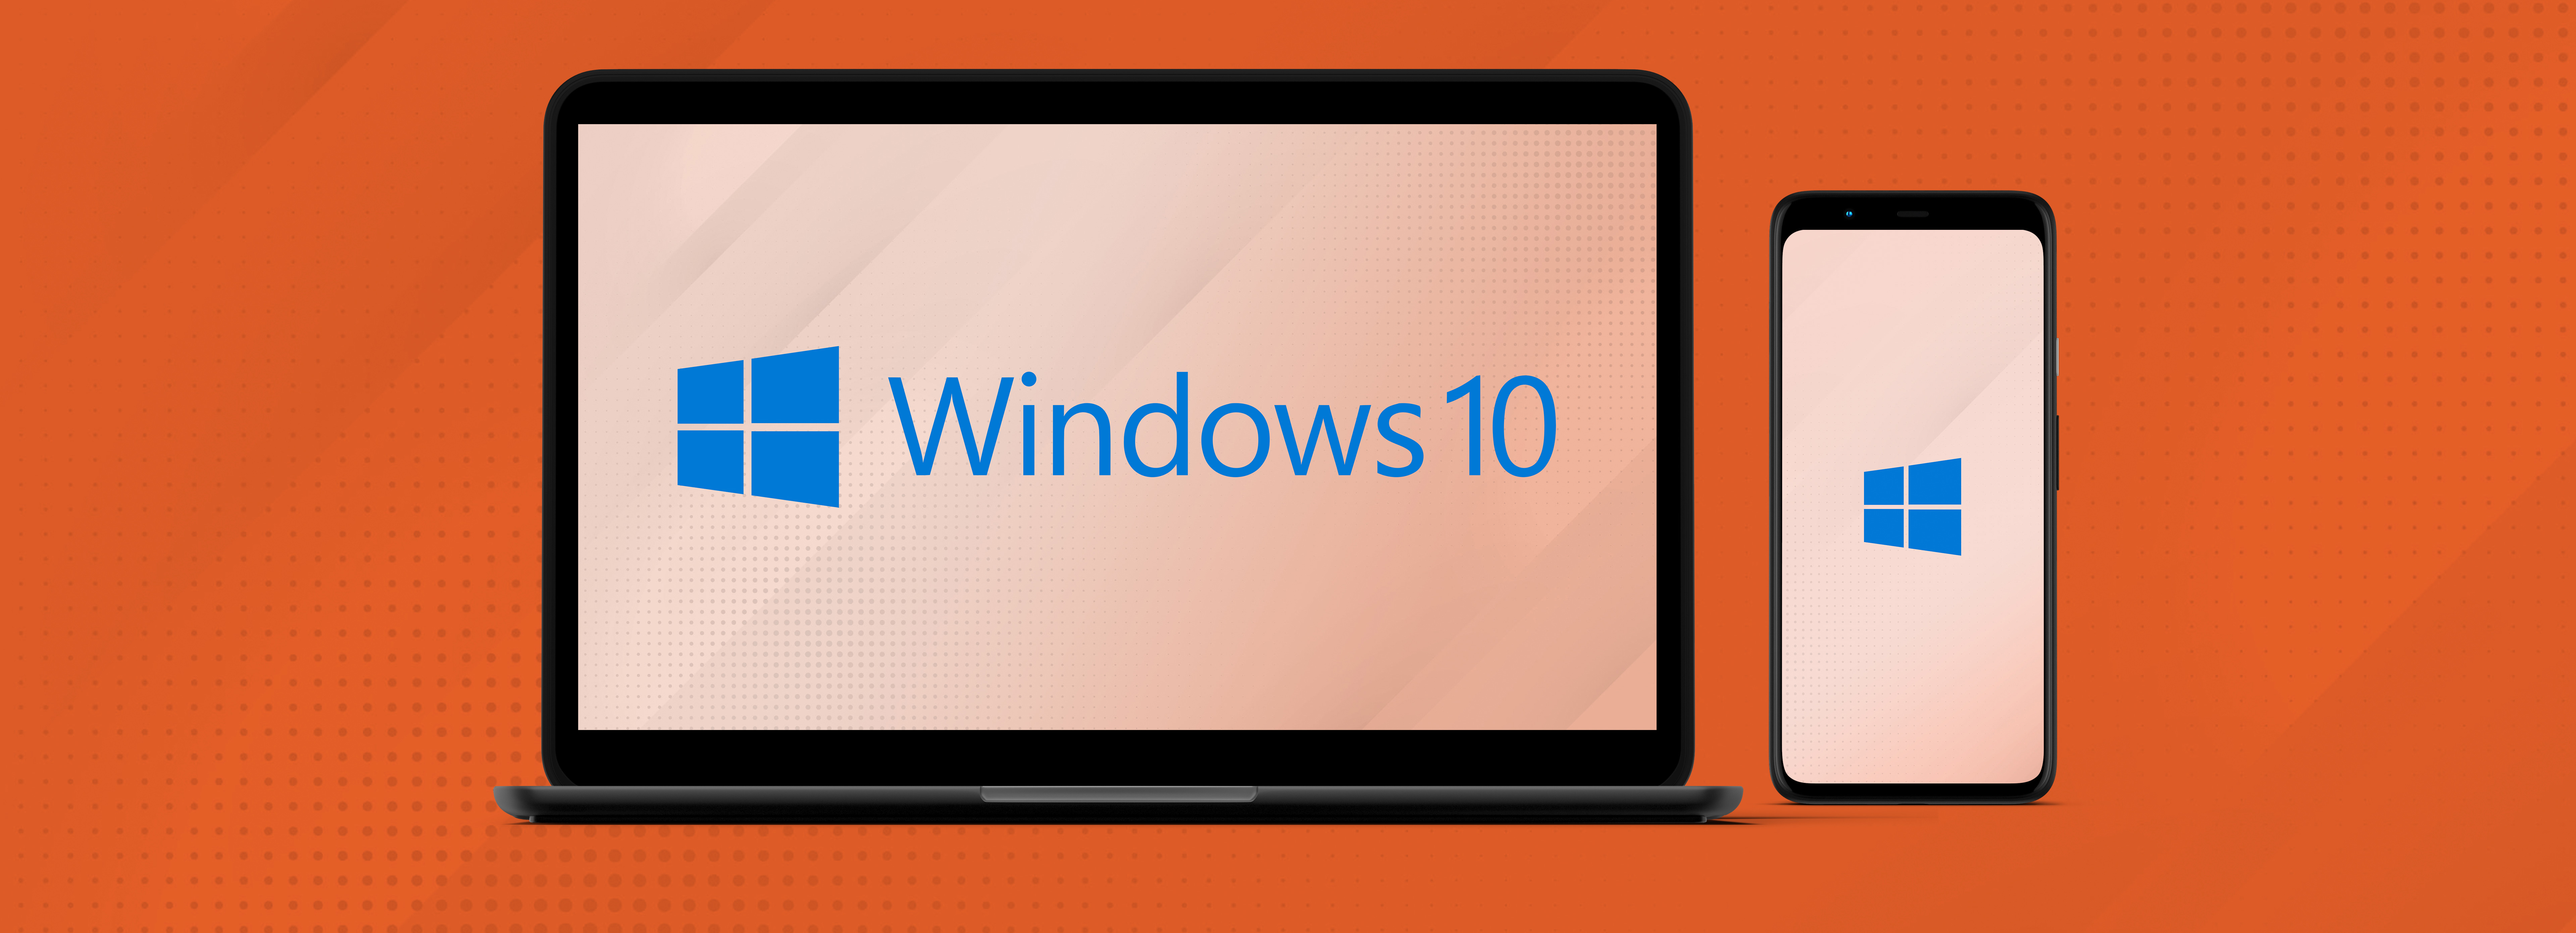 Offerte Windows 10: i migliori prezzi online 2